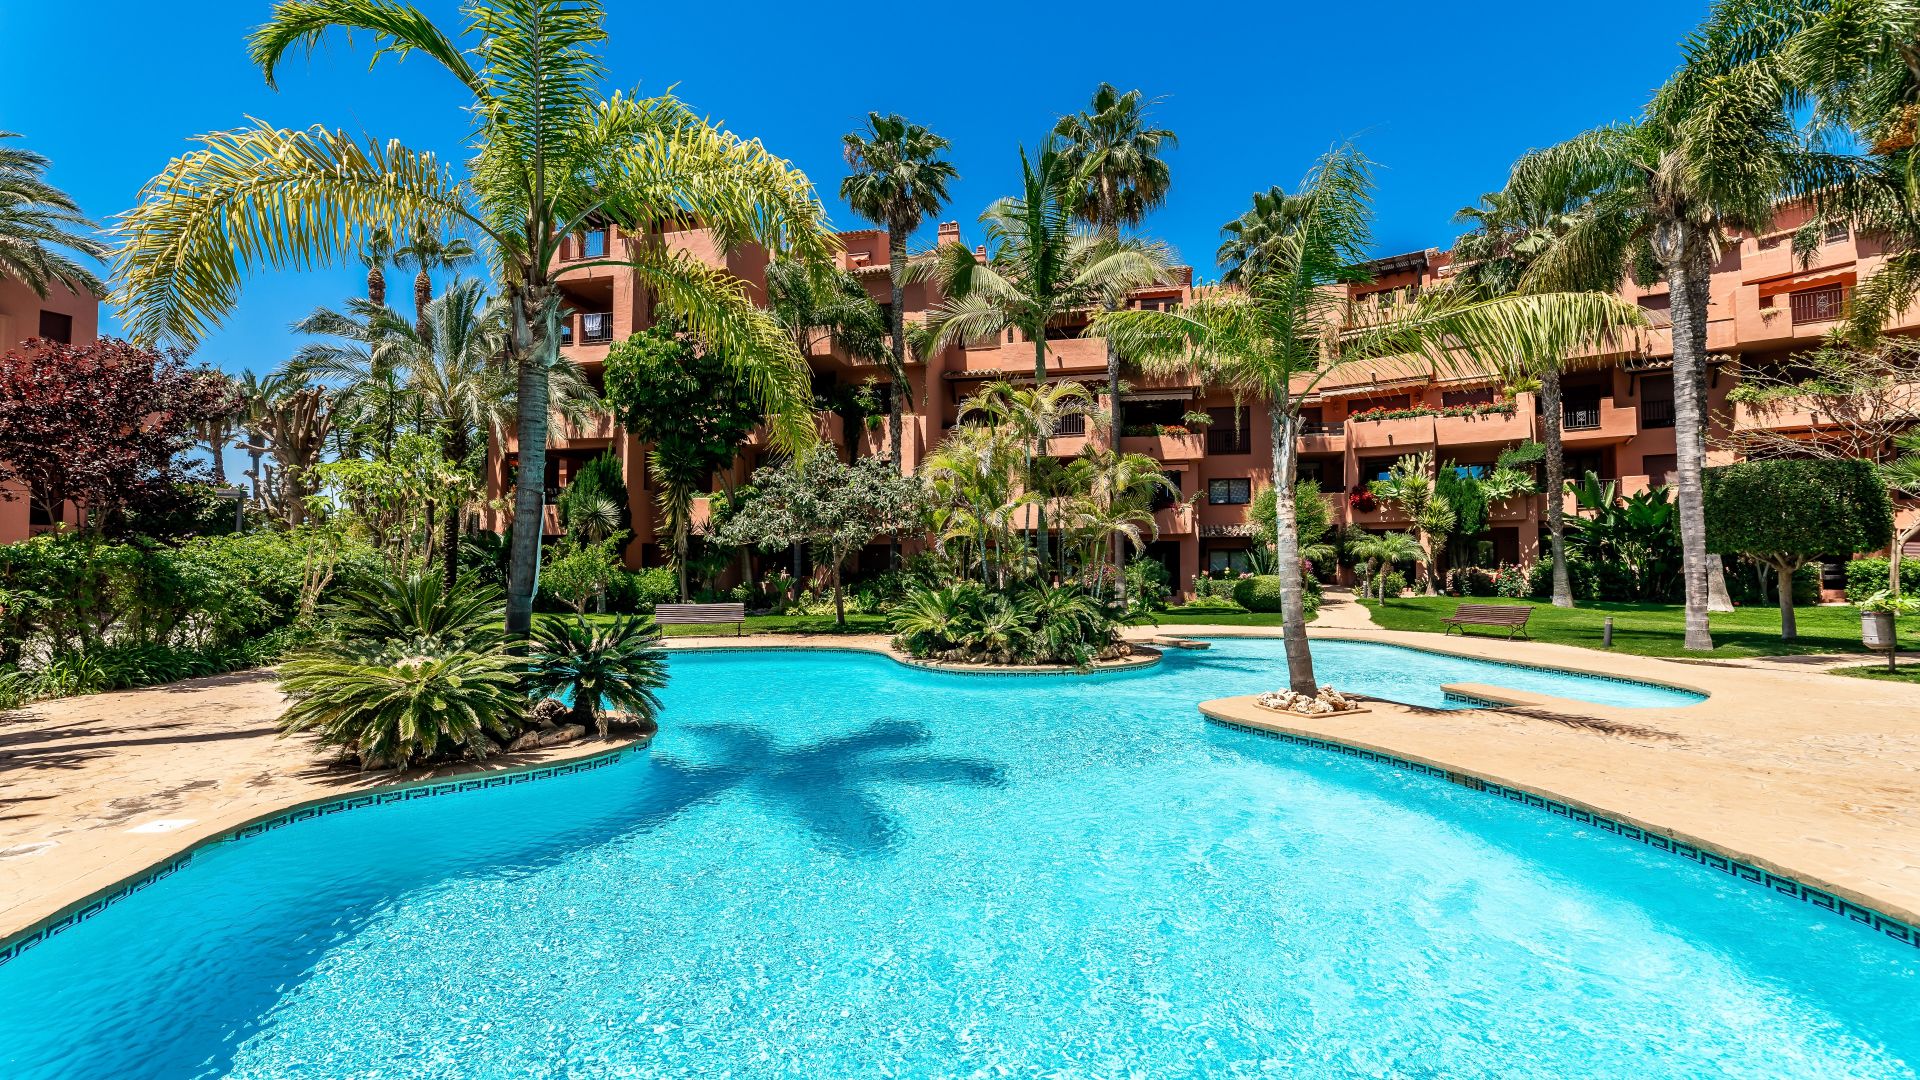 2 bedroom apartment in gated community 100 meters to the beach in Alicate playa, Marbella | Engel & Völkers Marbella